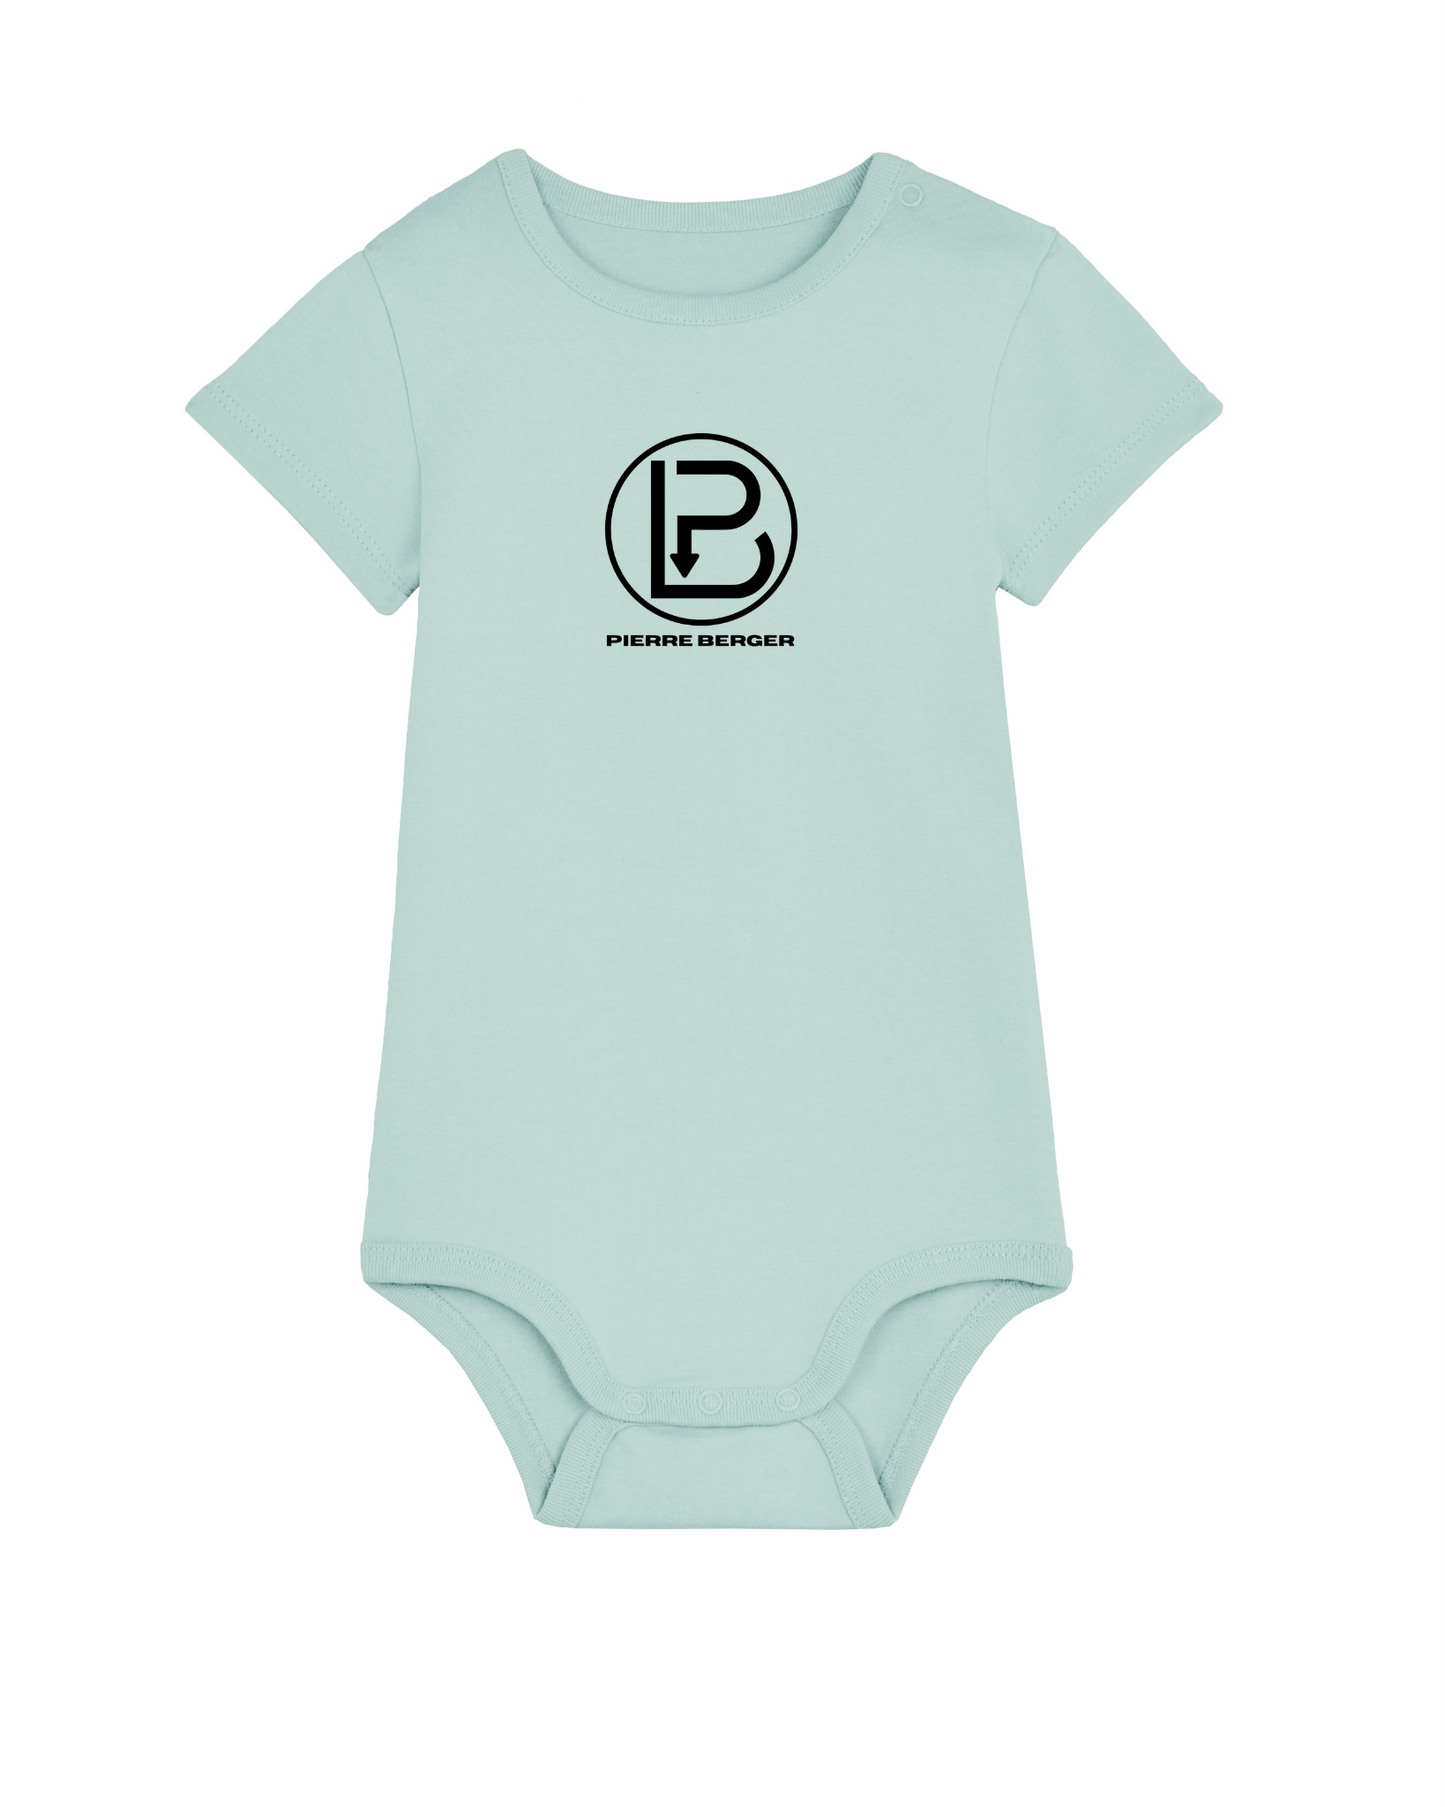 PIERRE BERGER - 100% Bio-Baumwolle Baby Body Stick